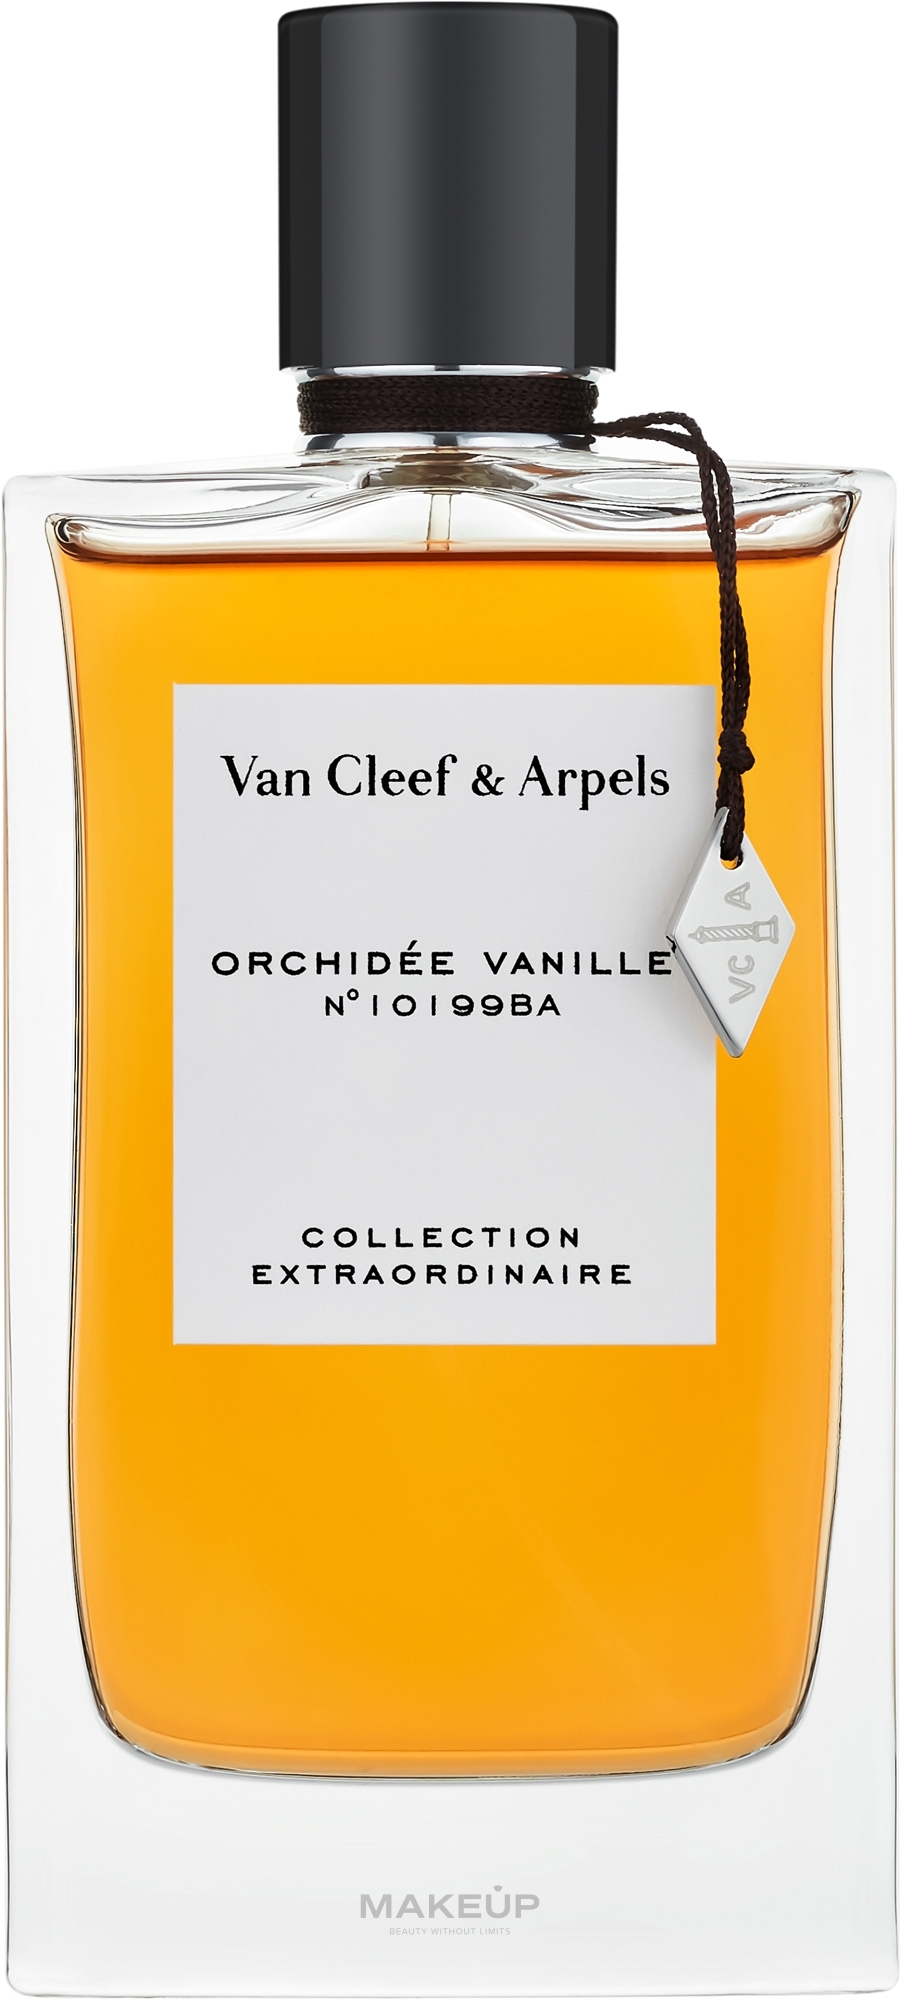 Van Cleef & Aprels Collection Extraordinaire Orchidee Vanille